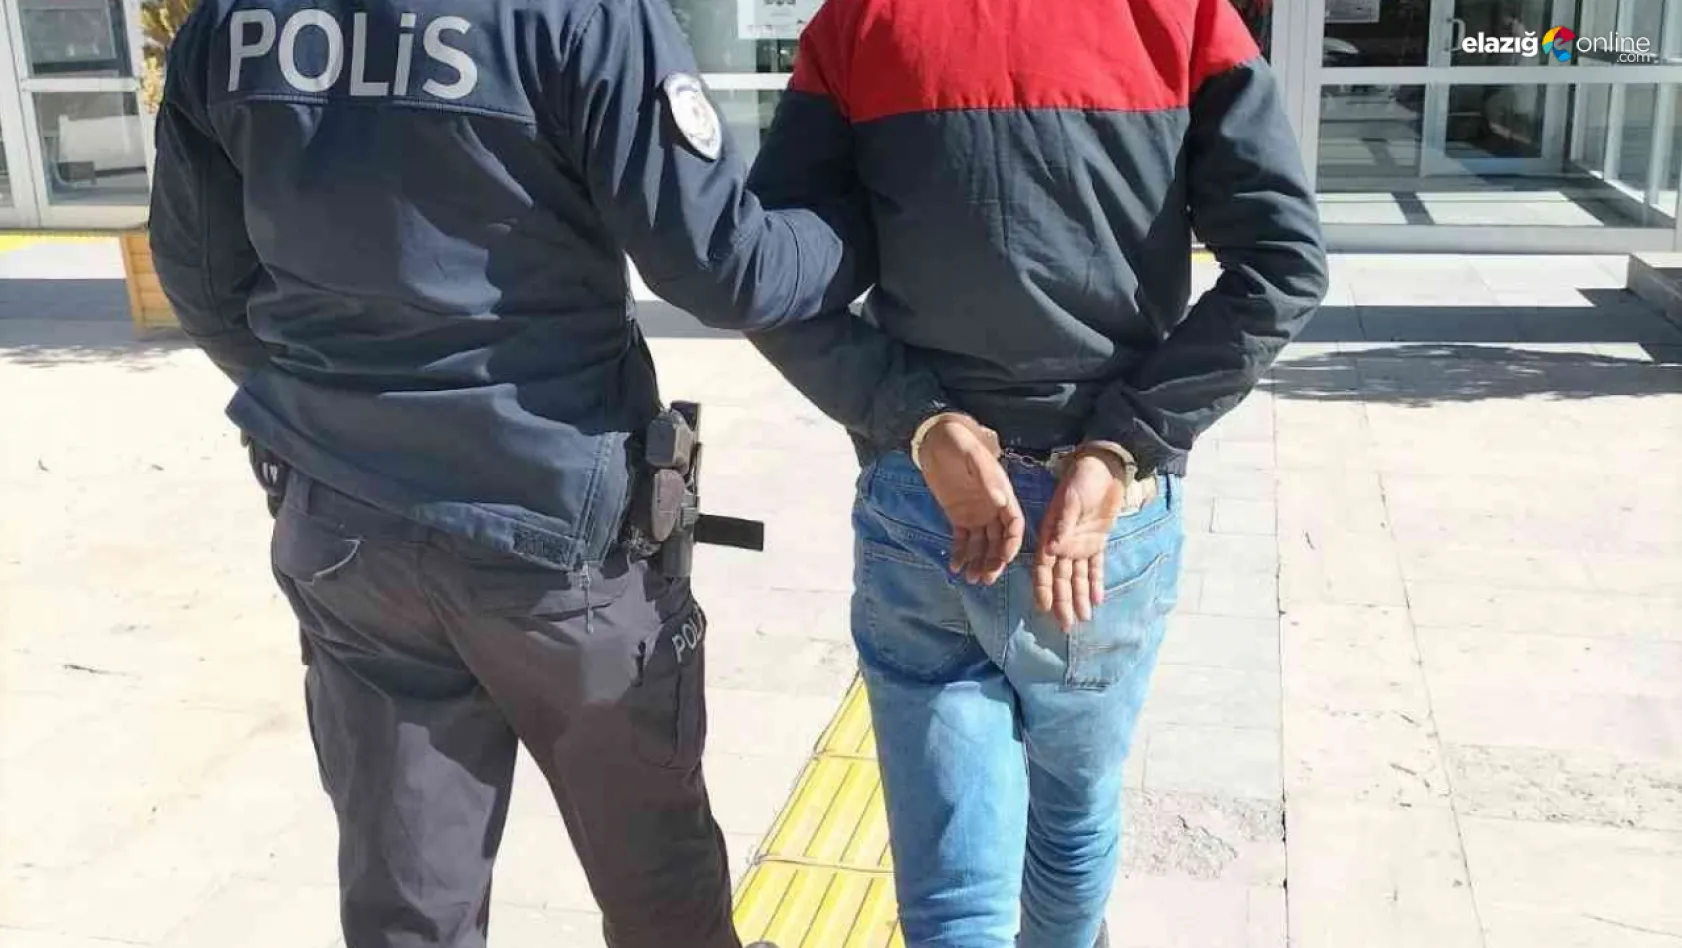 Elazığ'da su saati ve muslukları çalan şüpheli tutuklandı